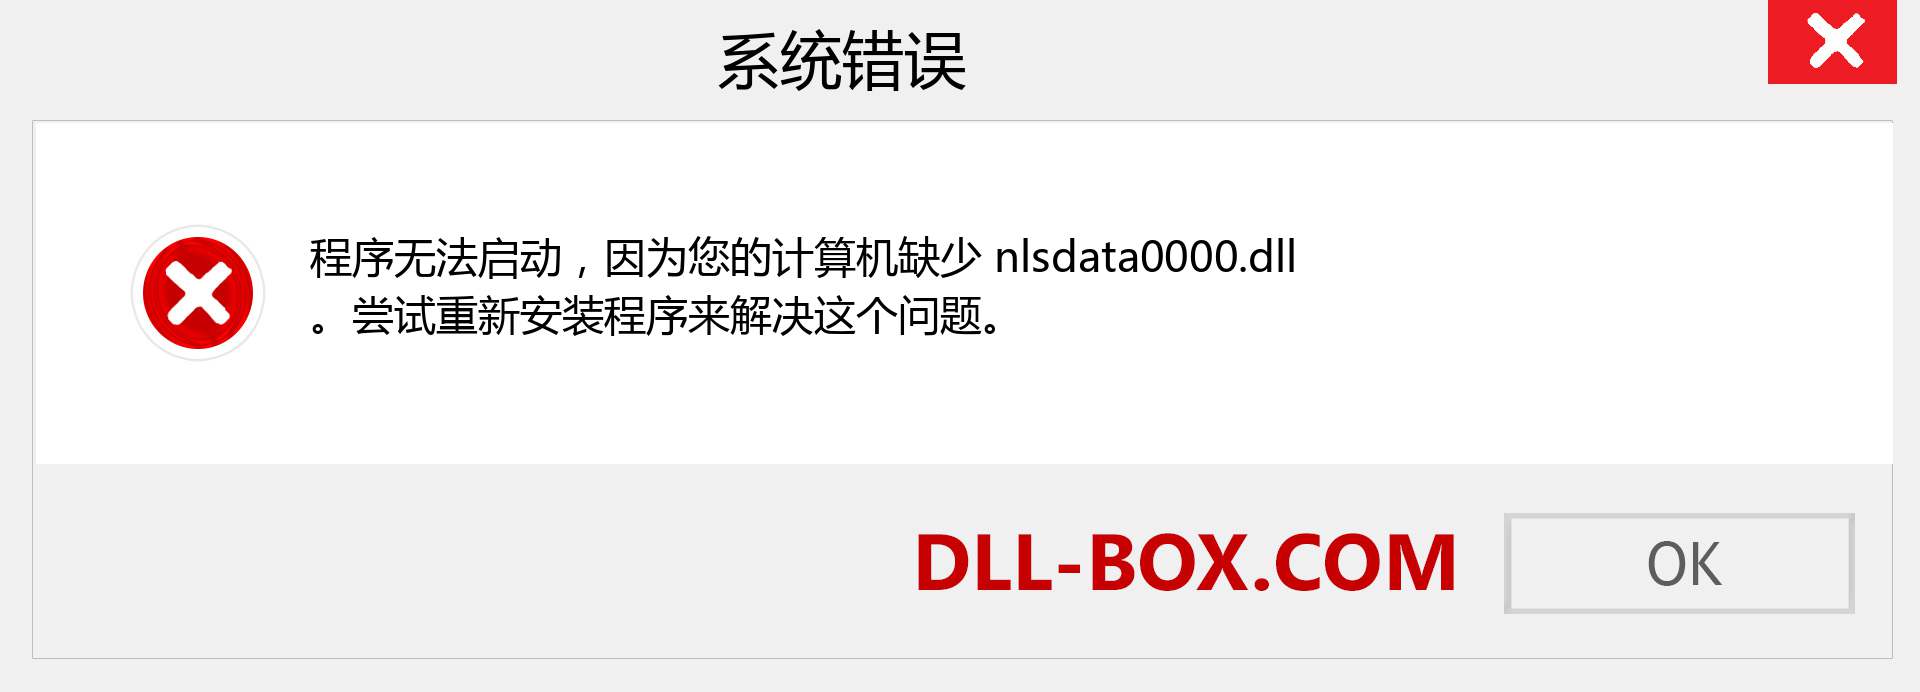 nlsdata0000.dll 文件丢失？。 适用于 Windows 7、8、10 的下载 - 修复 Windows、照片、图像上的 nlsdata0000 dll 丢失错误